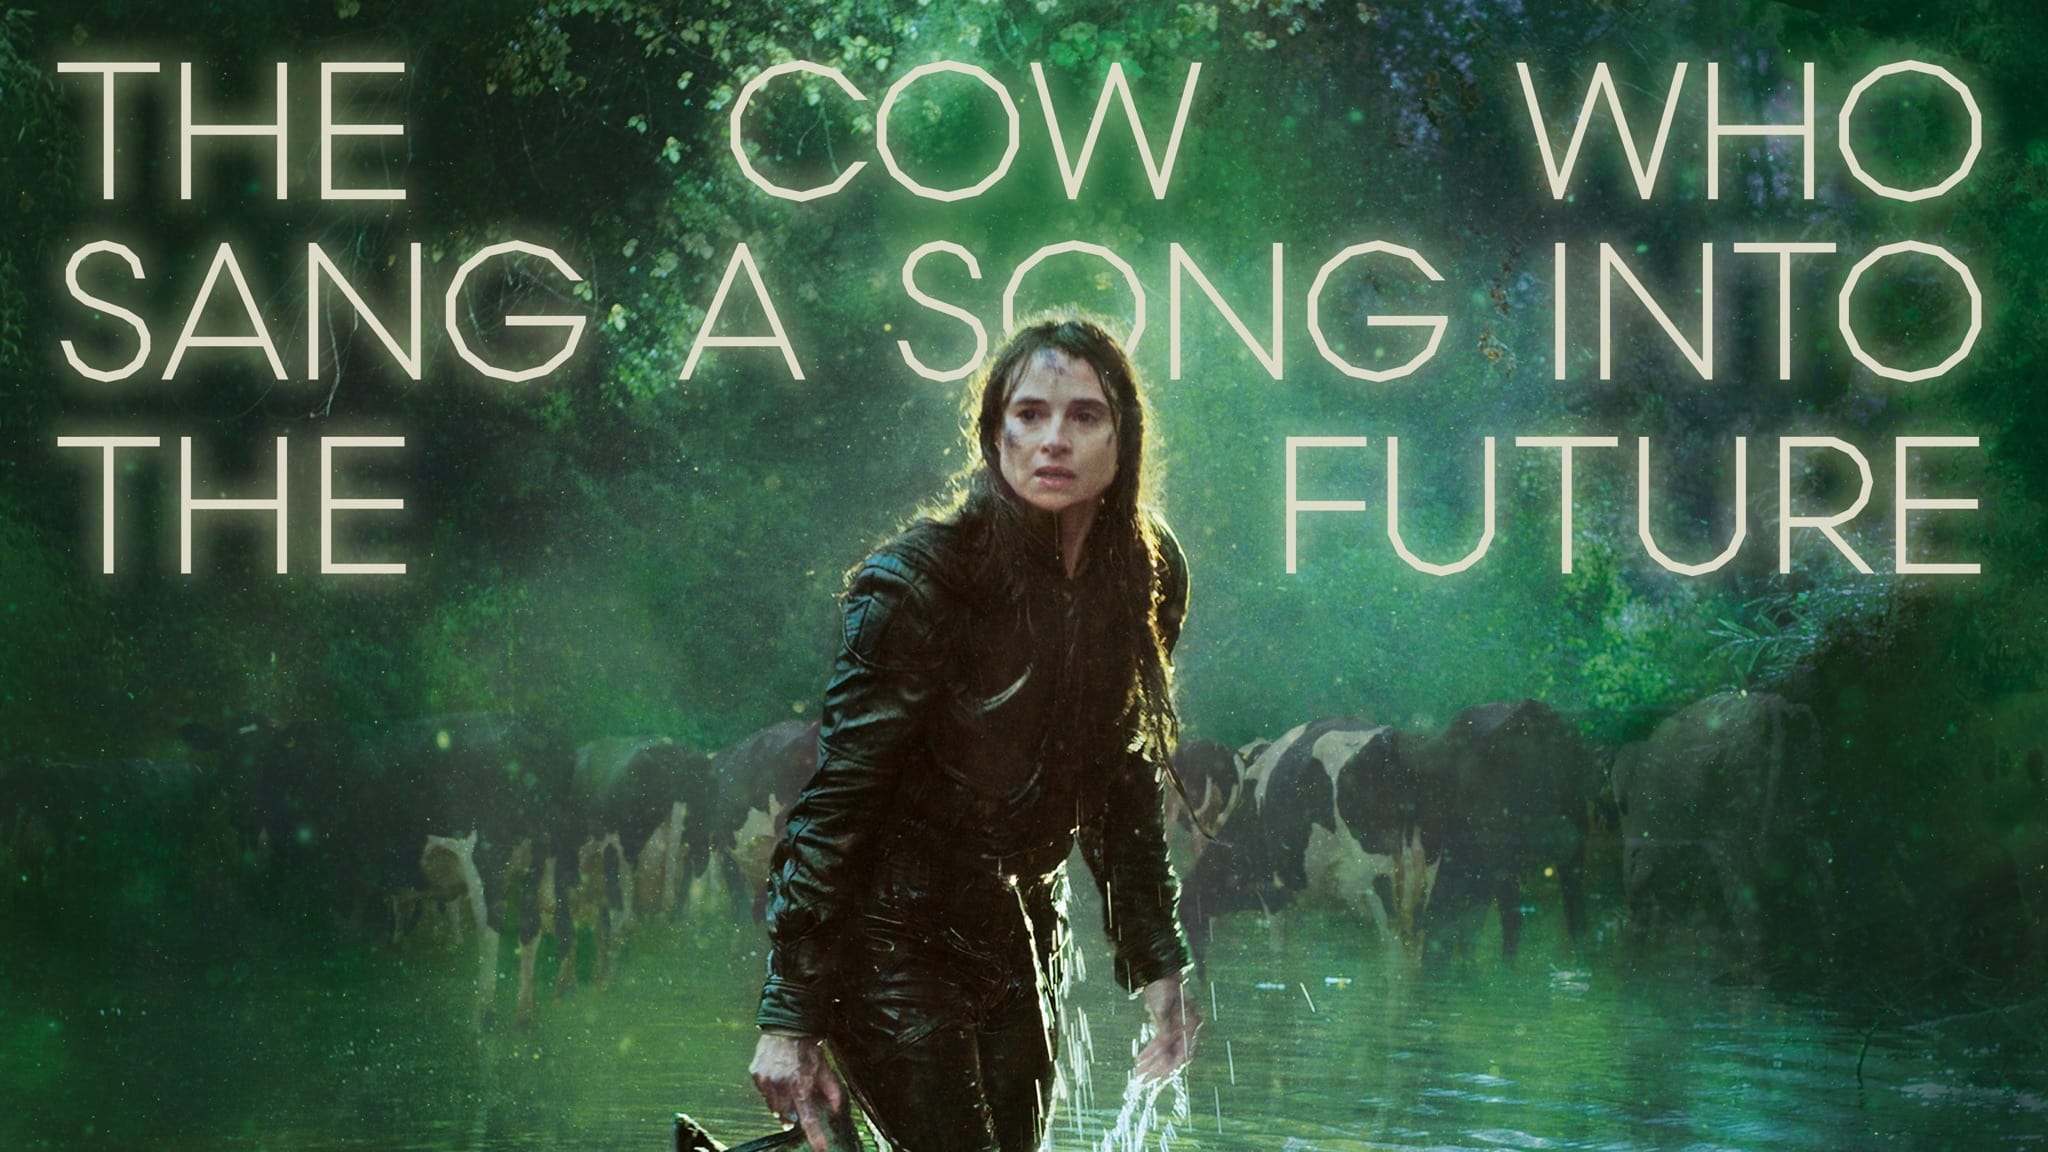 La Vache qui chantait le futur